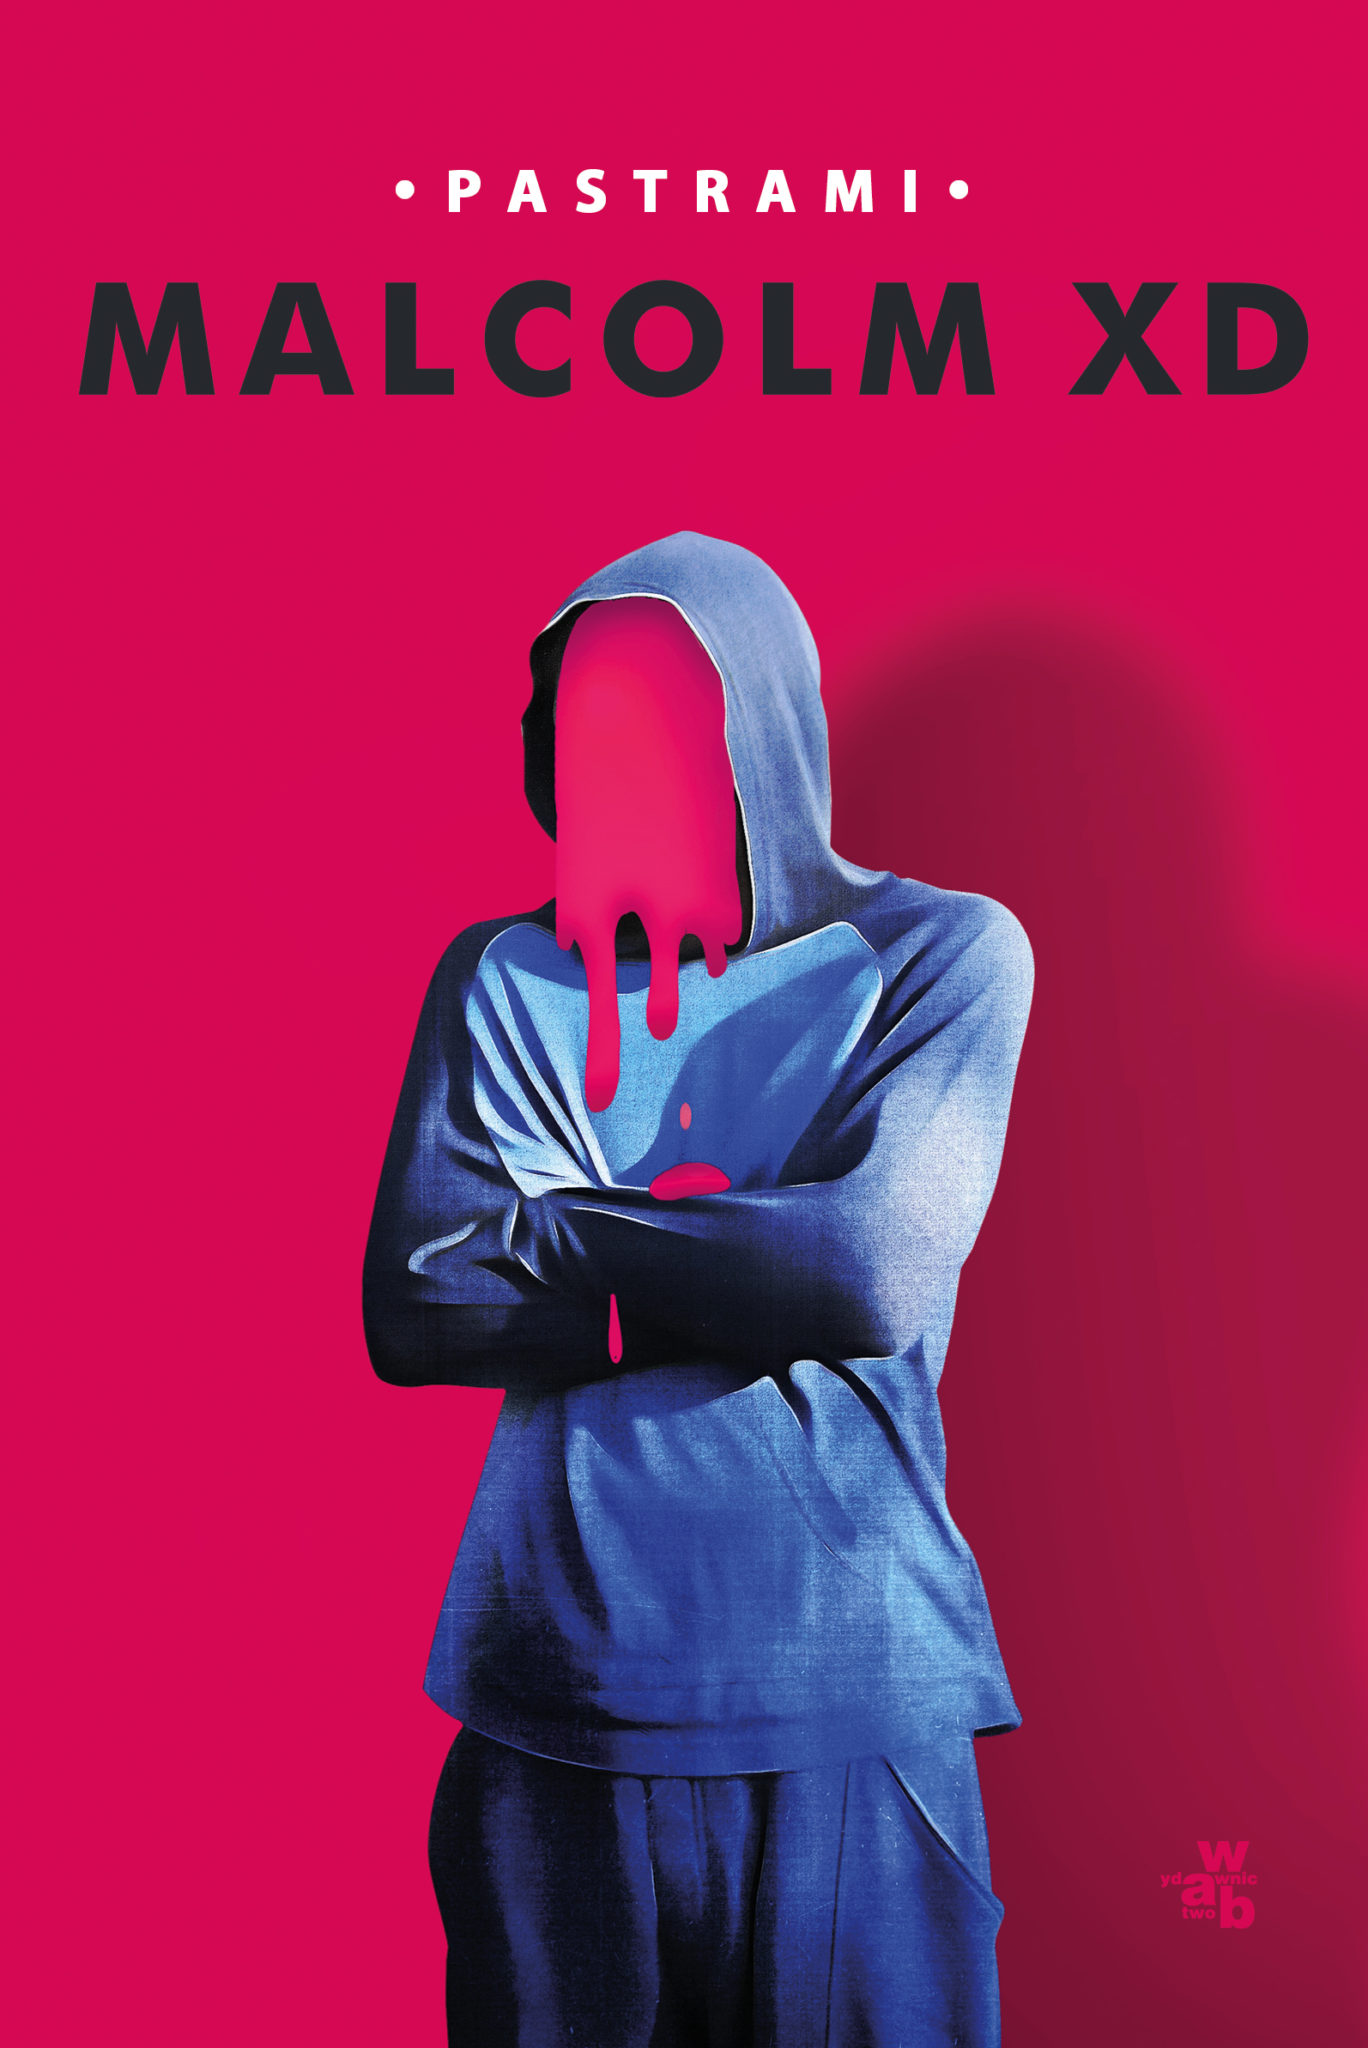 MalcolmXD Pastrami Został aresztowany z powodu cudzych błędów ortograficznych. „Noc na dołku” to jedna z past Malcoma XD z książki „Pastrami”